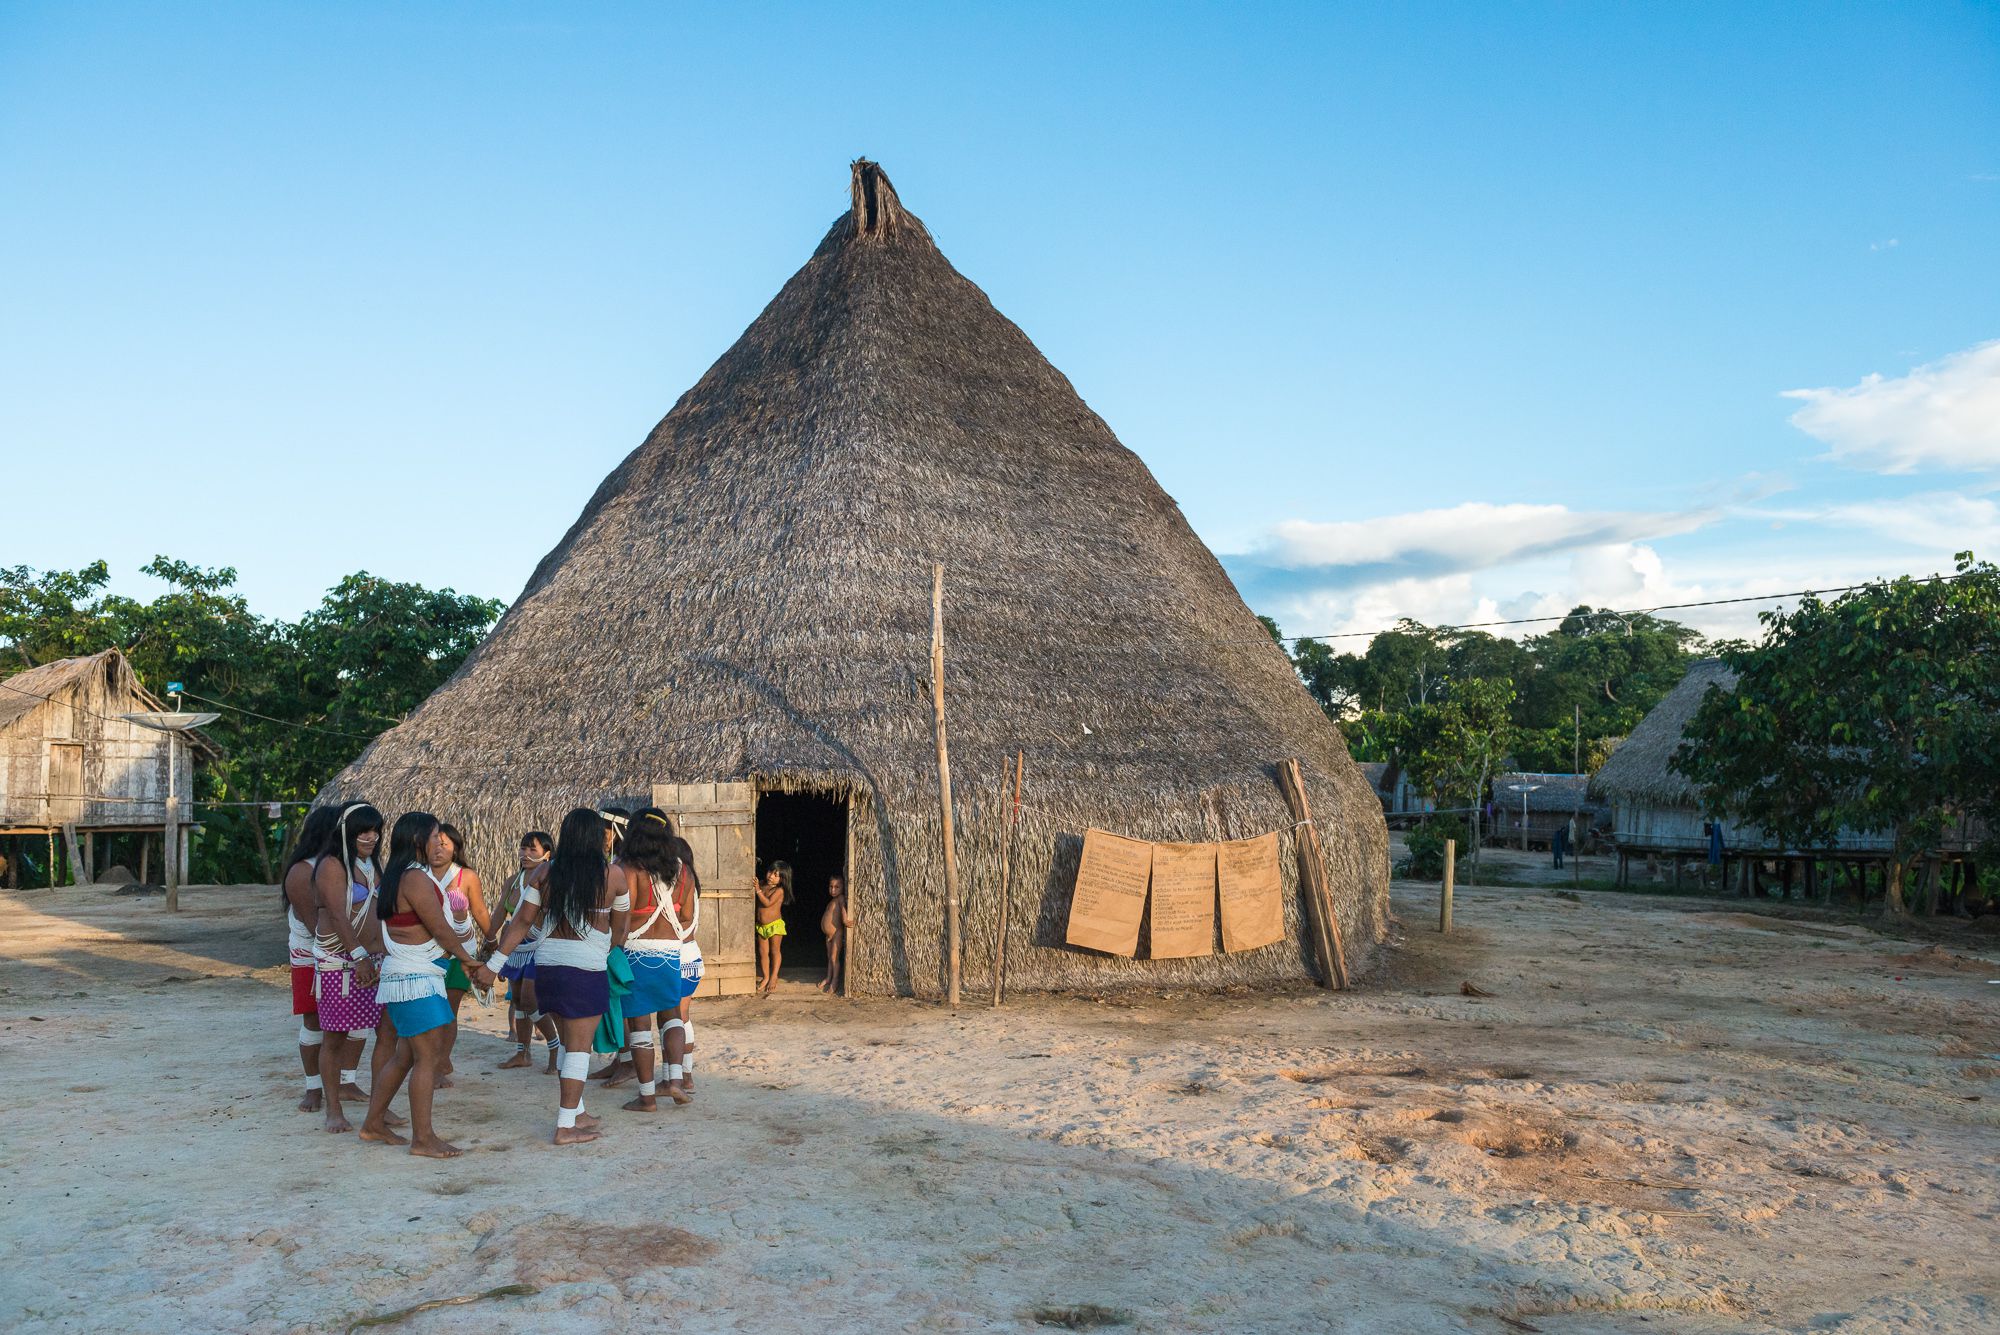 Documentário “Tribes on the Edge”, de Céline S. Cousteau, sobre a Amazónia, é exibido em Aveiro